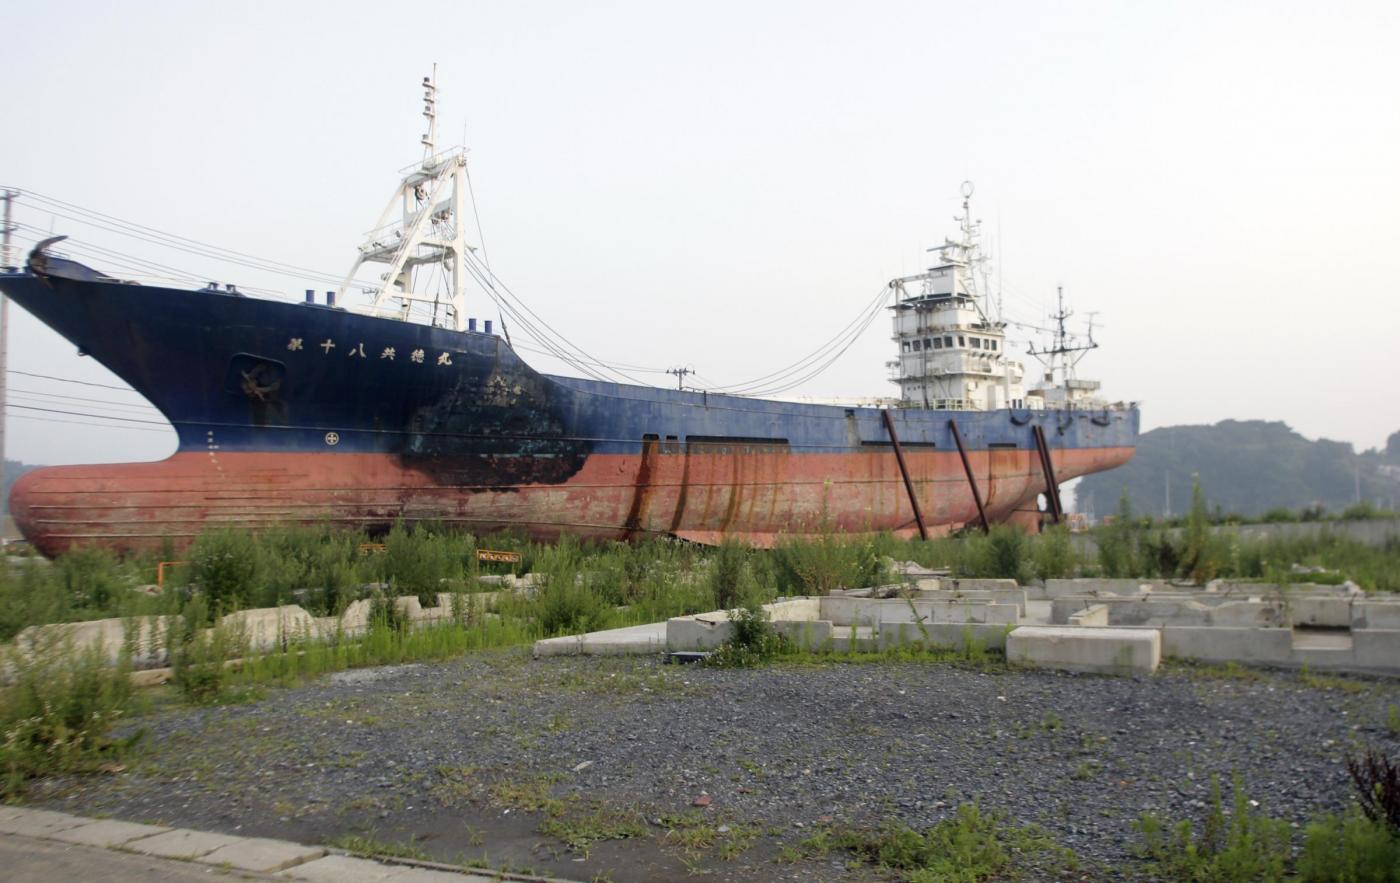 Giappone, la nave incagliata simbolo dello tsunami sarà demolita 04